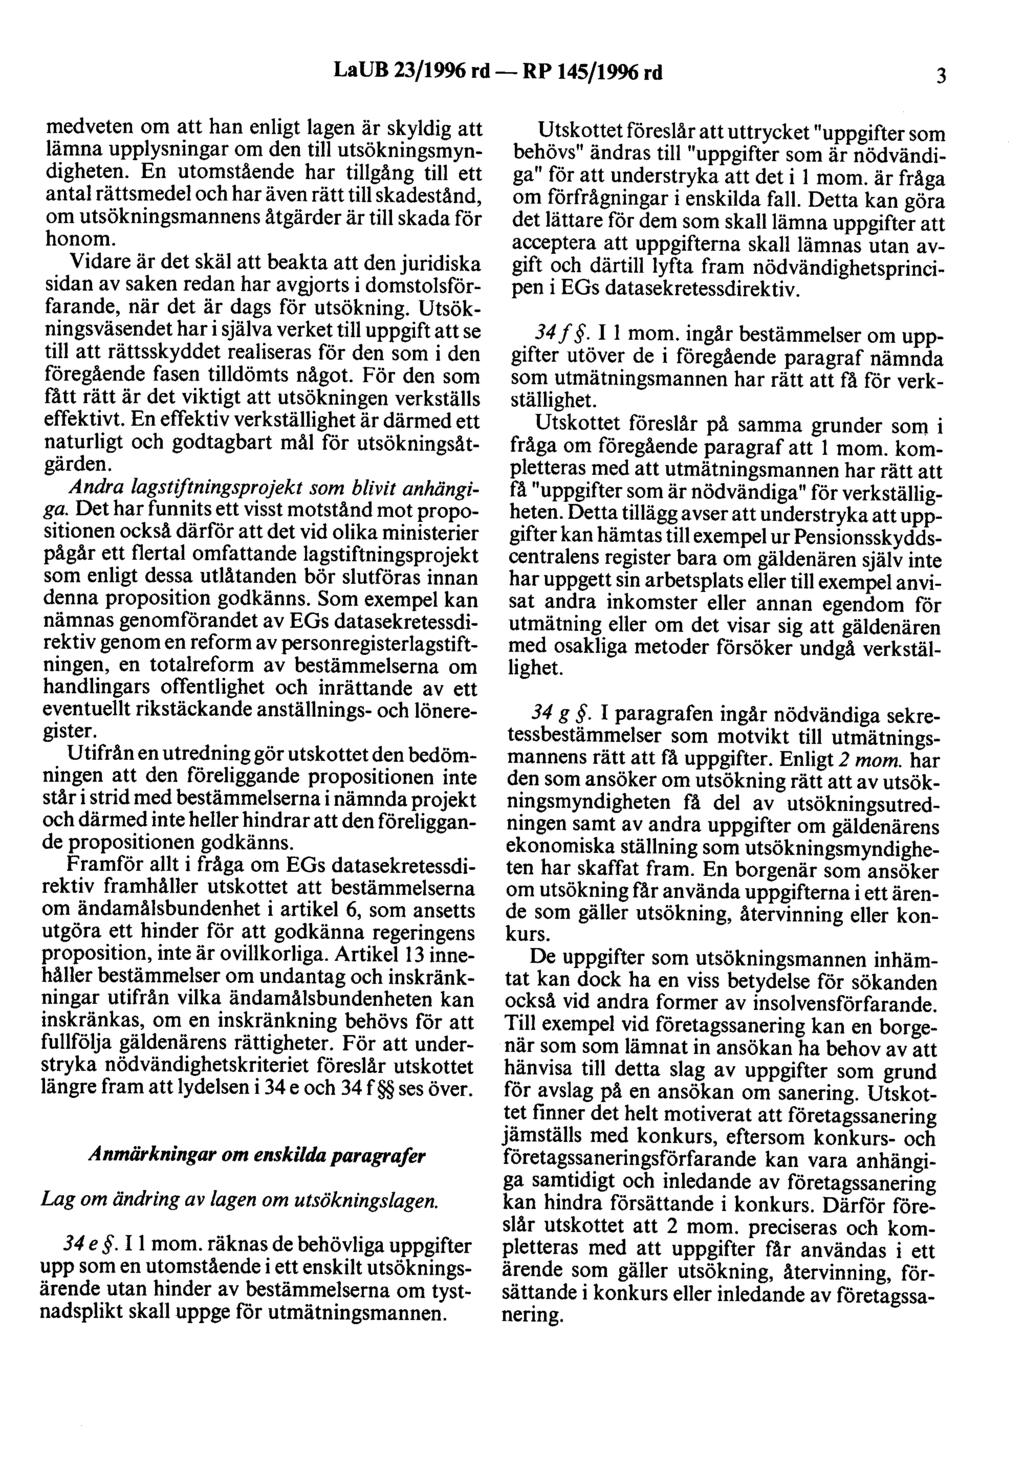 LaUB 23/1996 rd- RP 145/19% rd 3 medveten om att han enligt lagen är skyldig att lämna upplysningar om den till utsökningsmyndigheten.